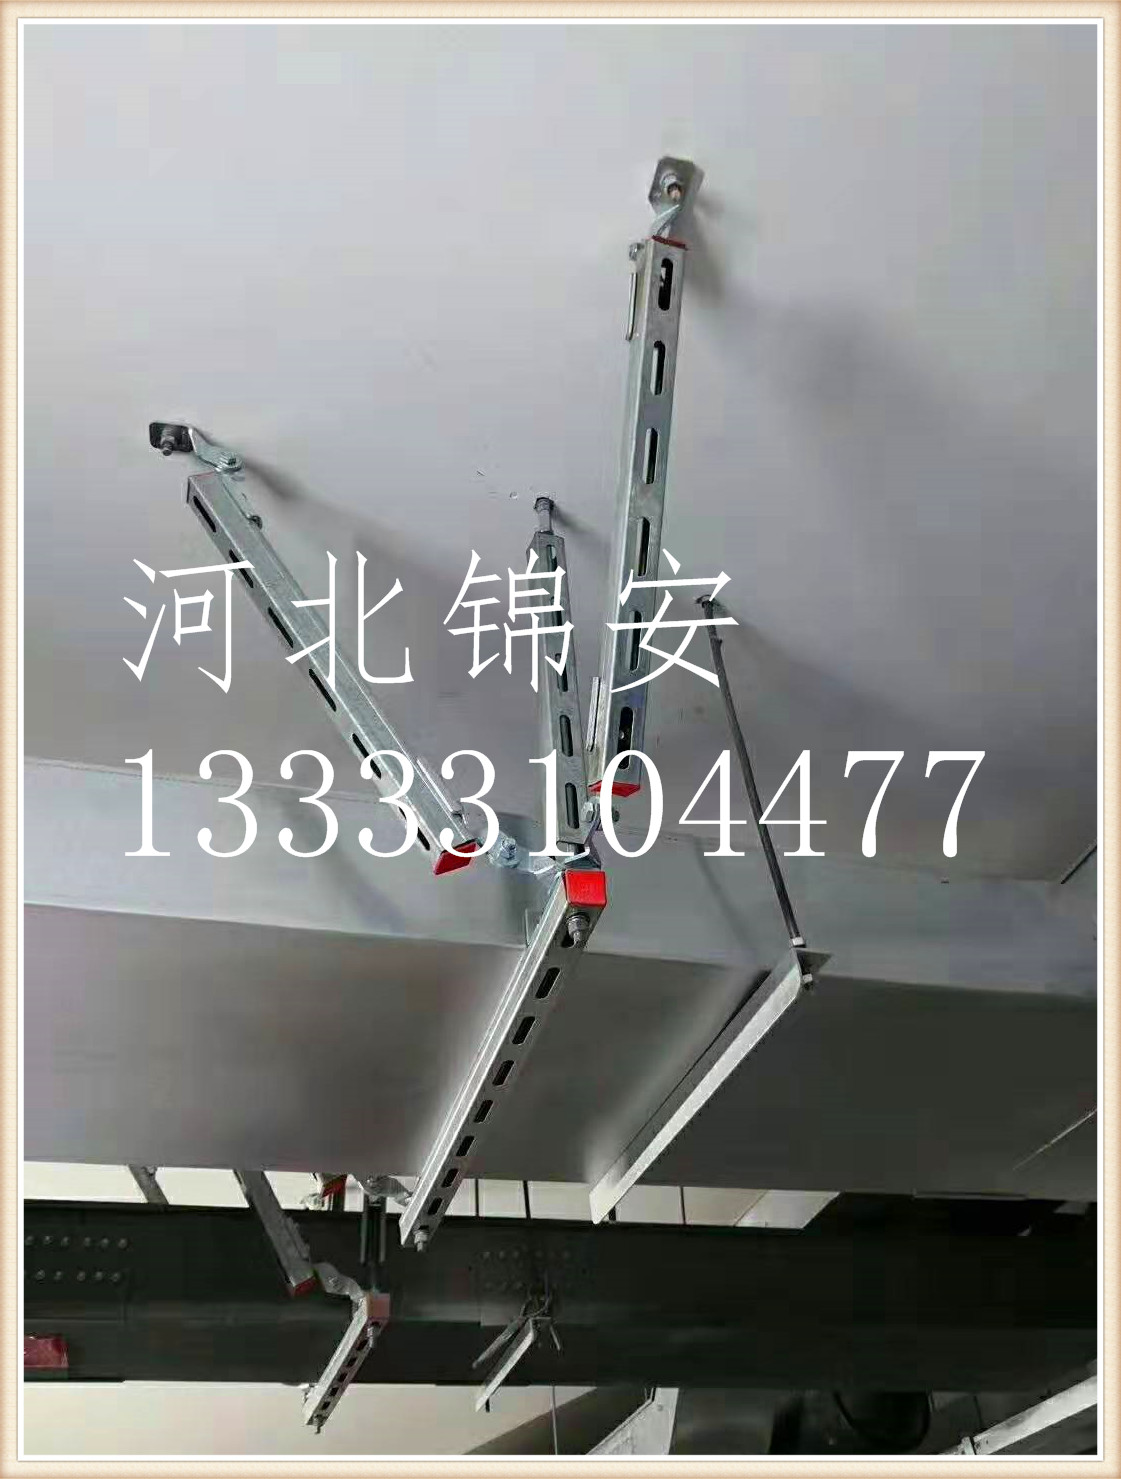 抗震支架河北锦安紧固件有限公司                                         抗震支架生产厂家